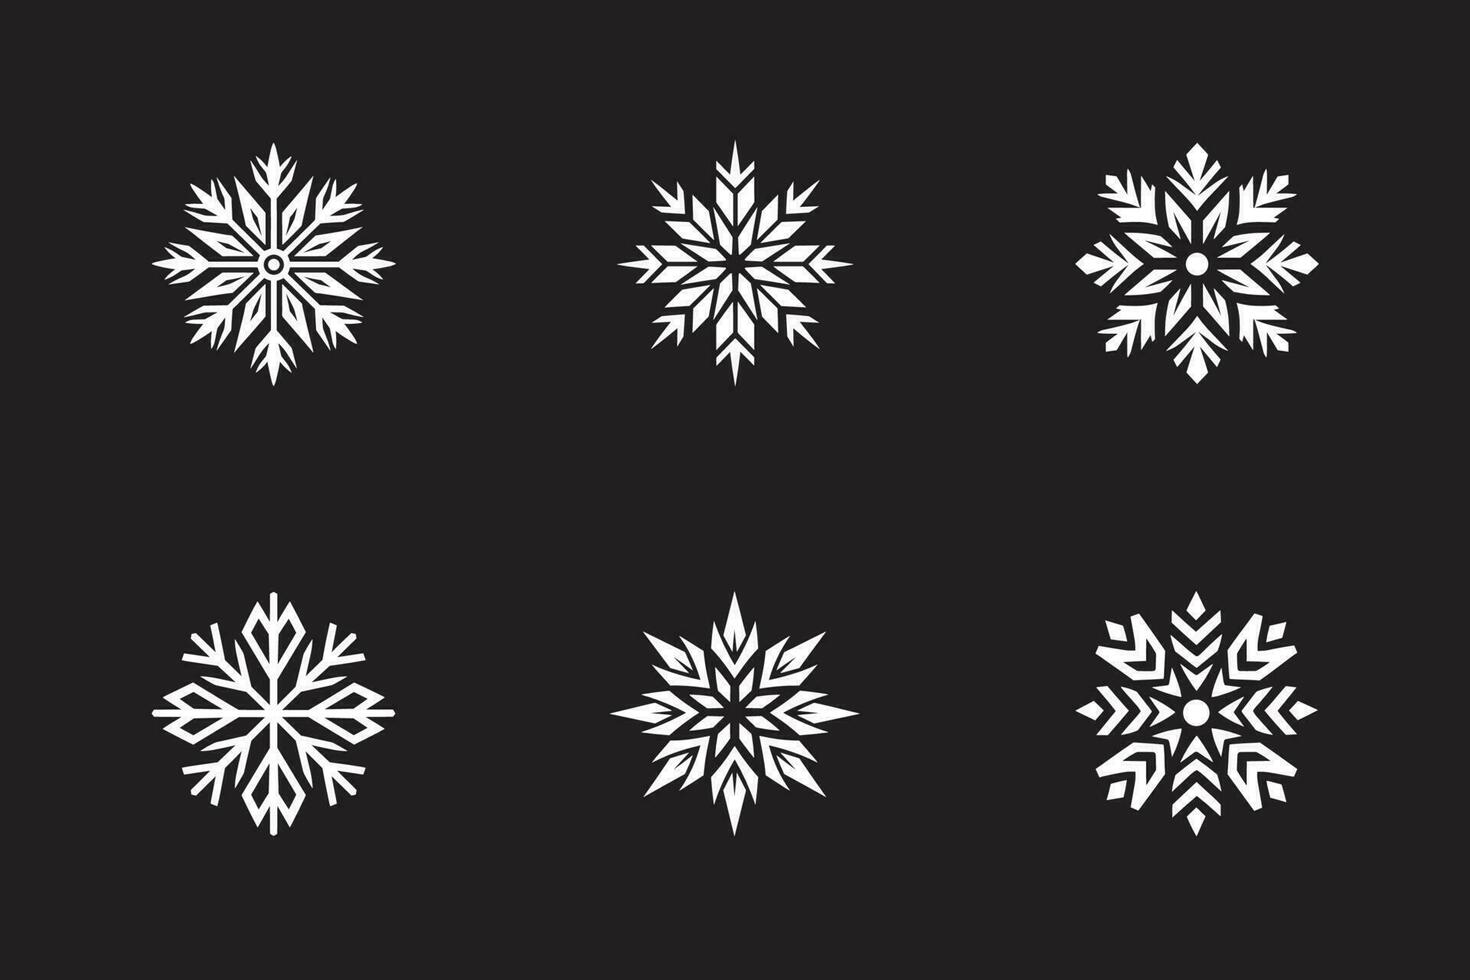 Schneeflocken zu Weihnachten vektor